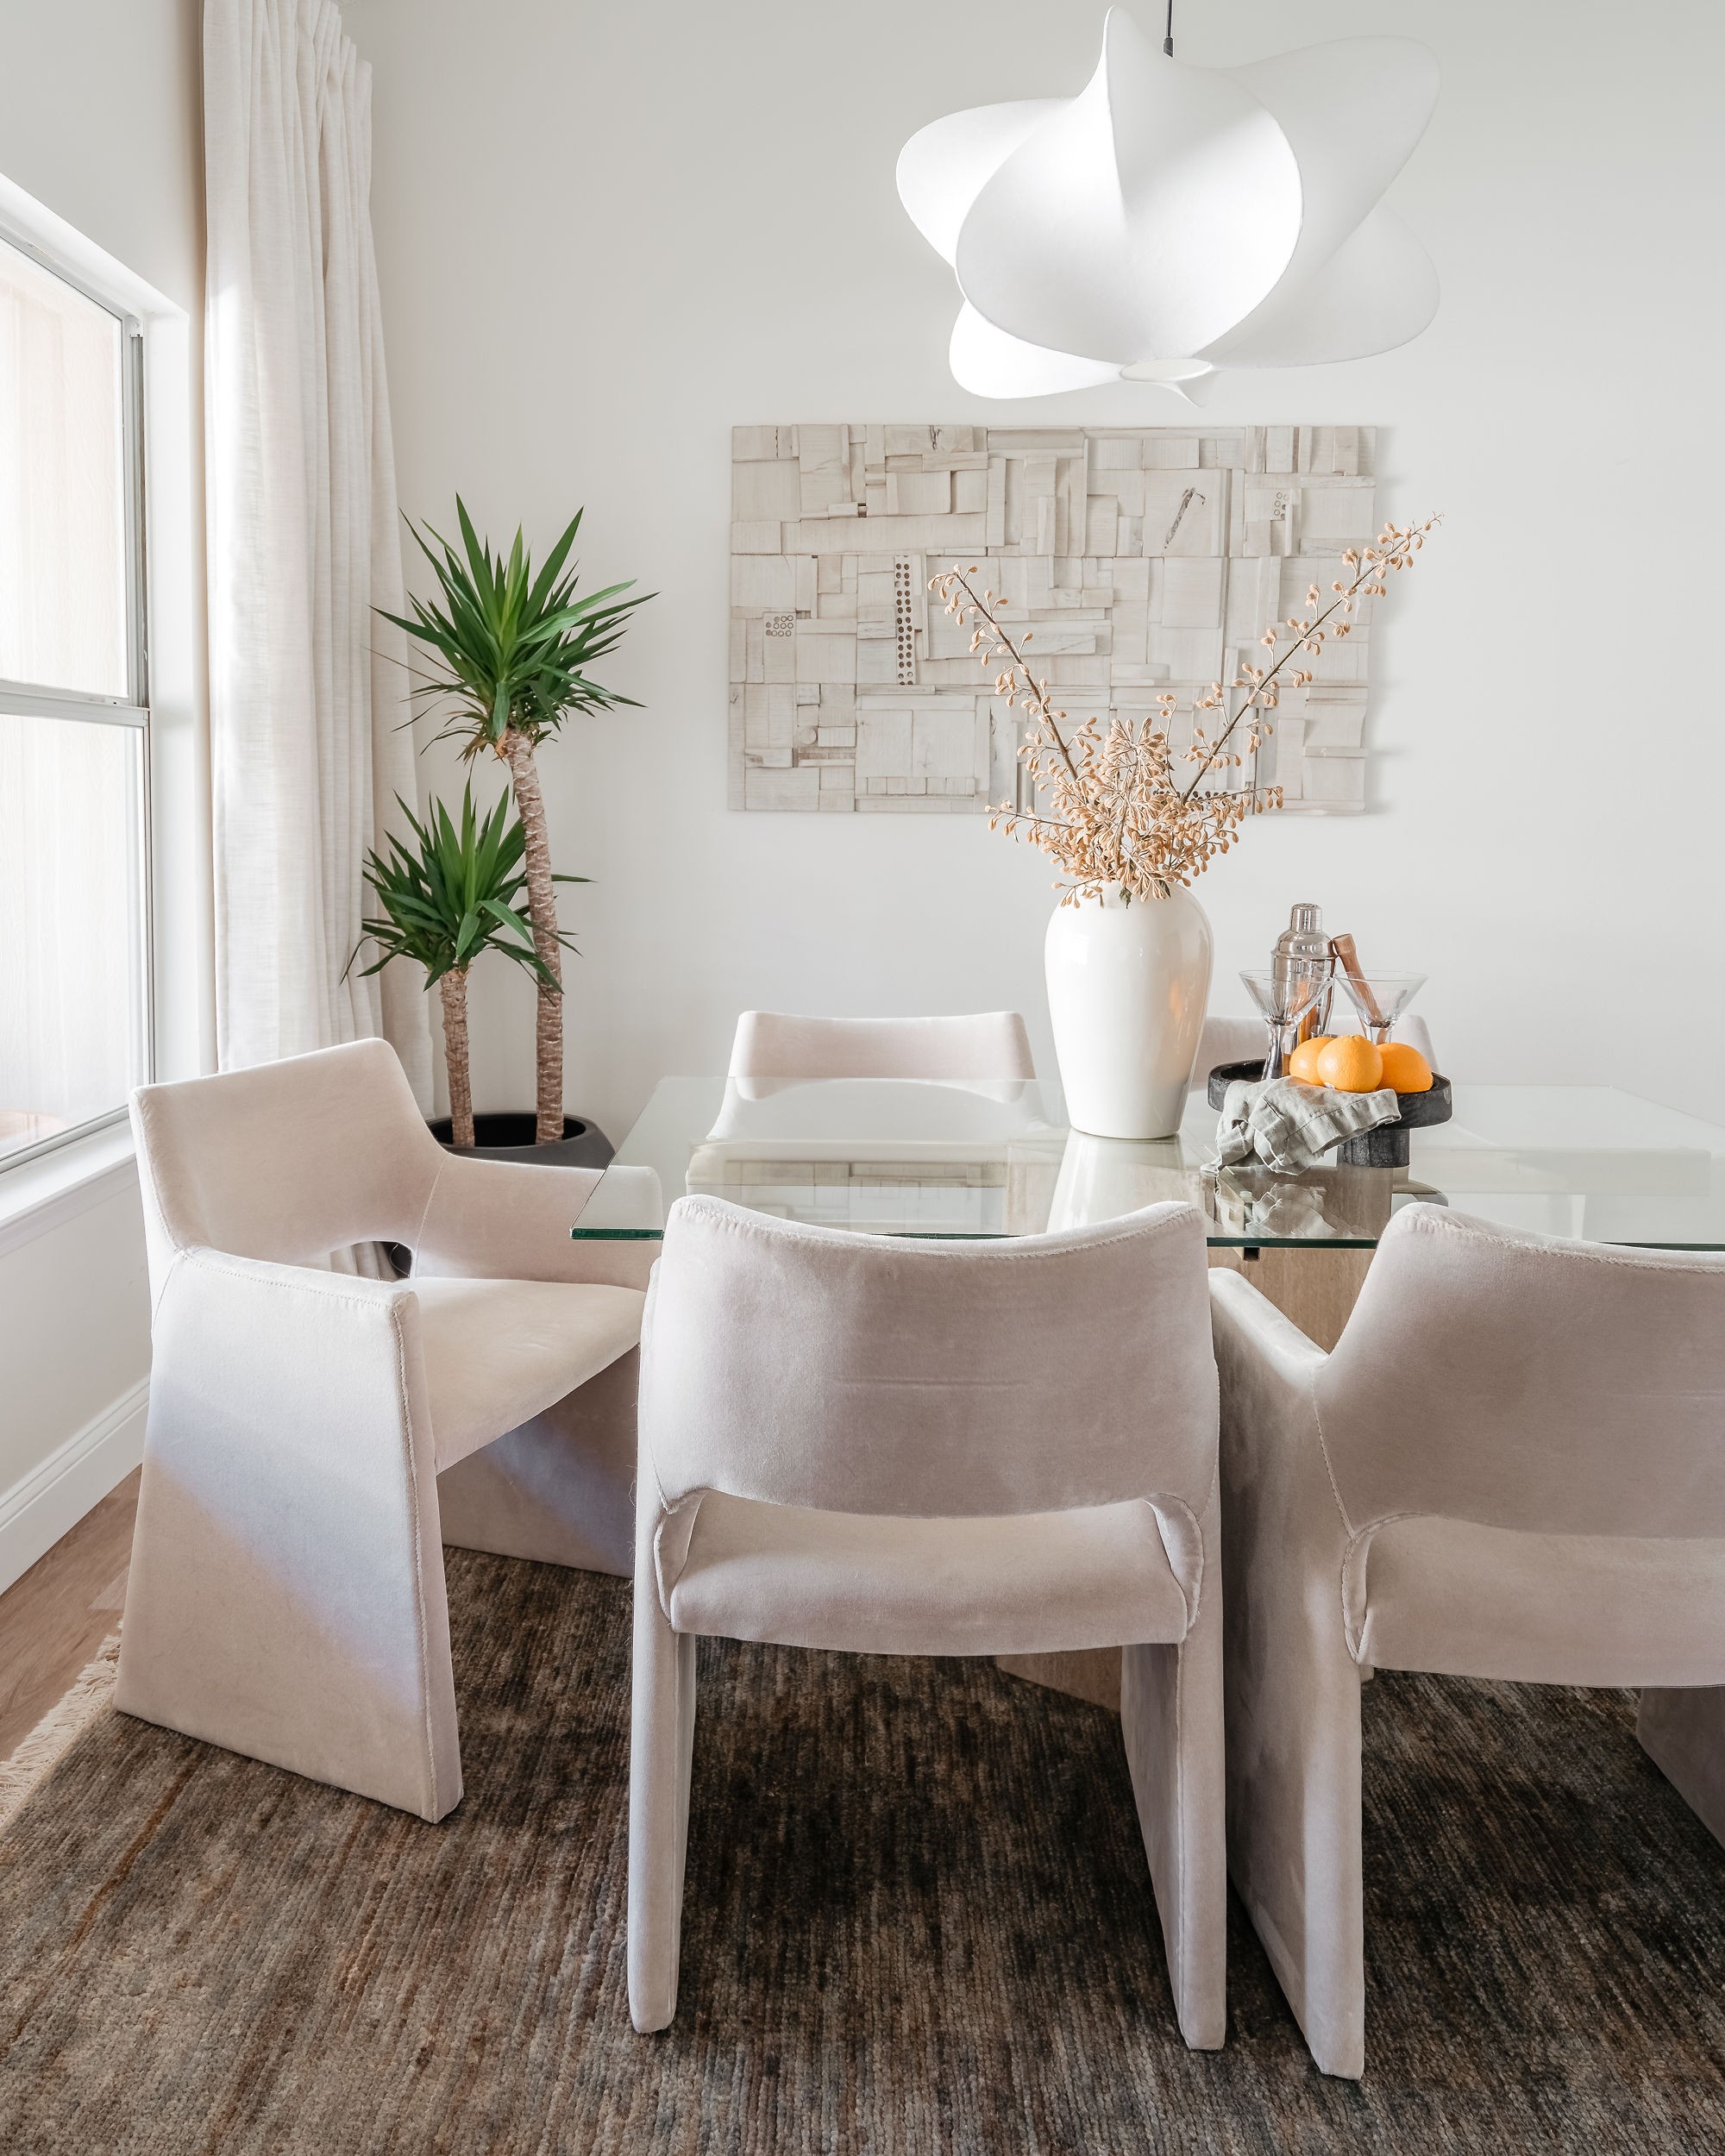 Décor do dia: sala de jantar com paleta neutra, plantas e cortinas de linho (Foto: Lauren Newman)